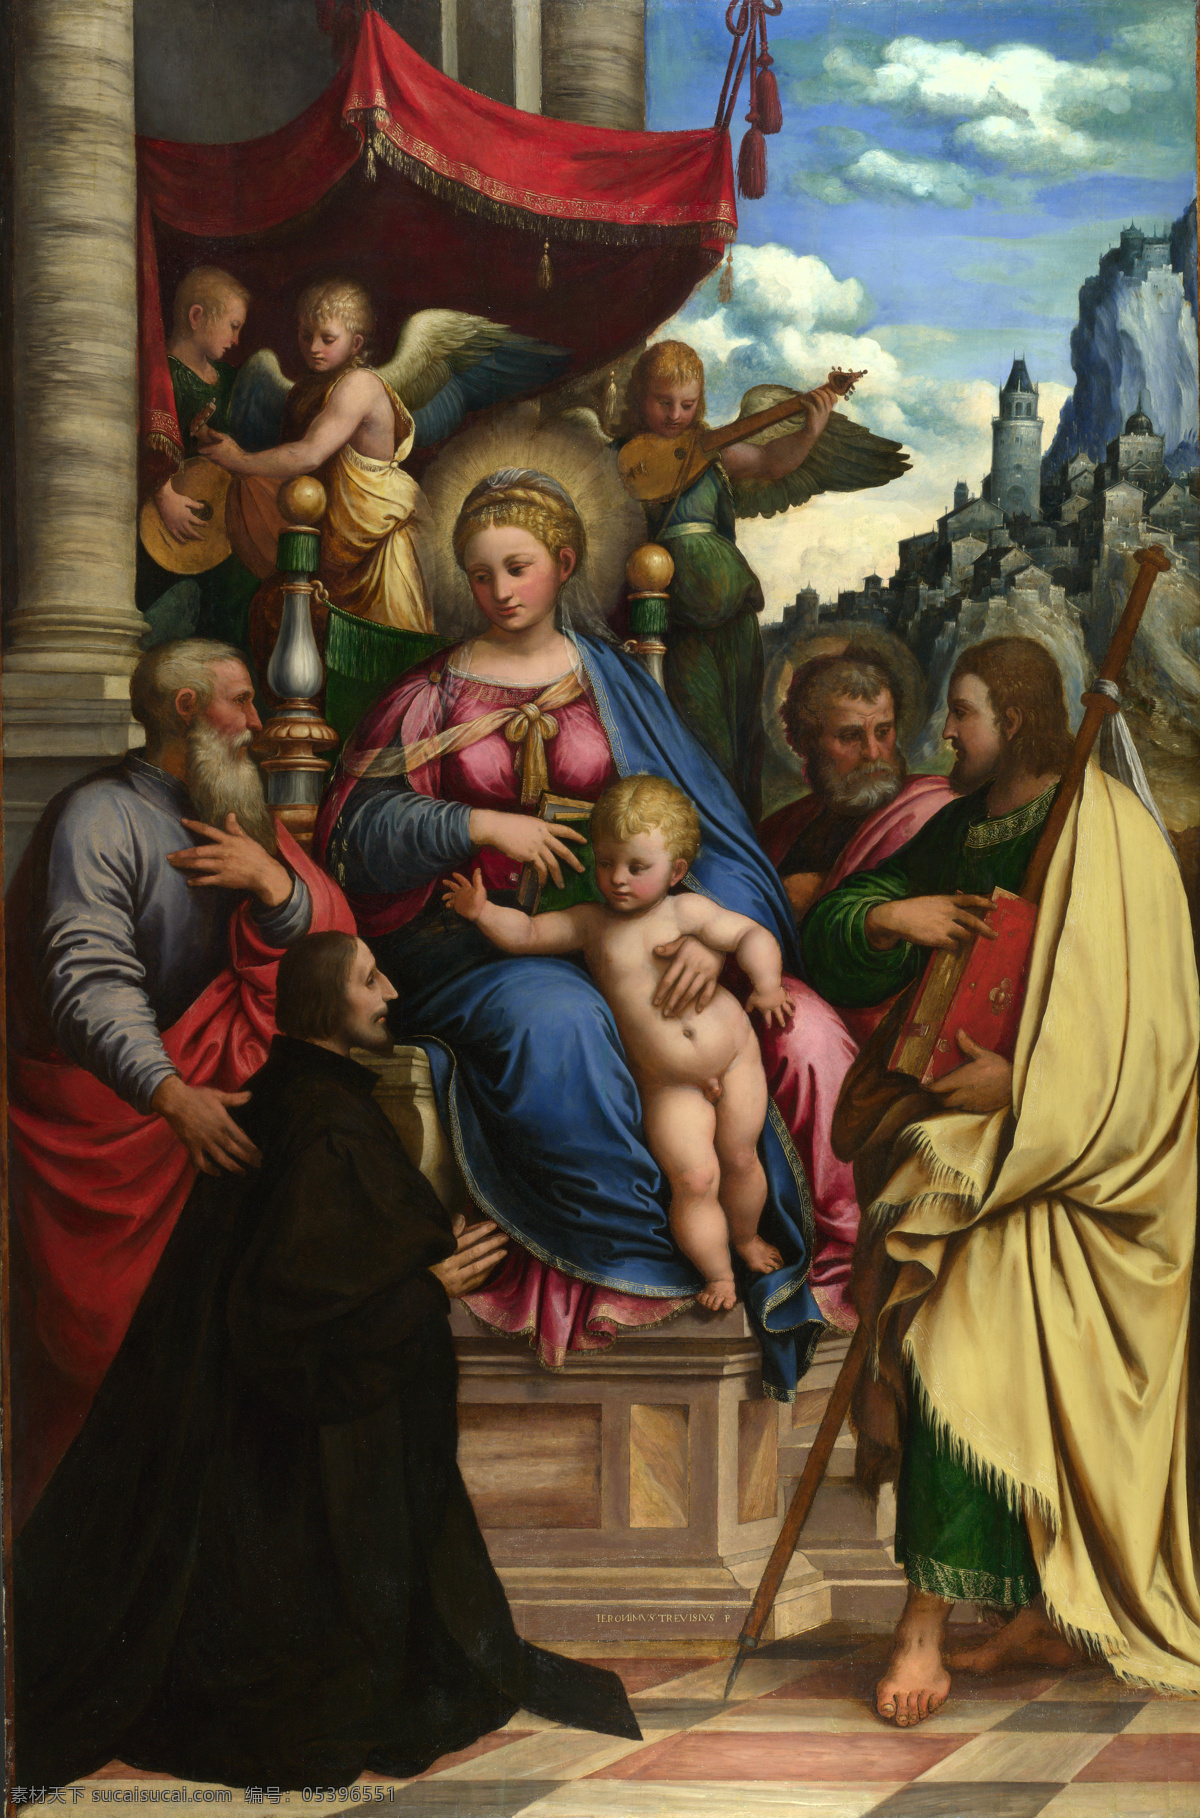 圣母 耶稣 油画 绘画艺术 油画写生 油画人物 圣母耶稣 肖像画 人物油画写生 装饰画 书画文字 文化艺术